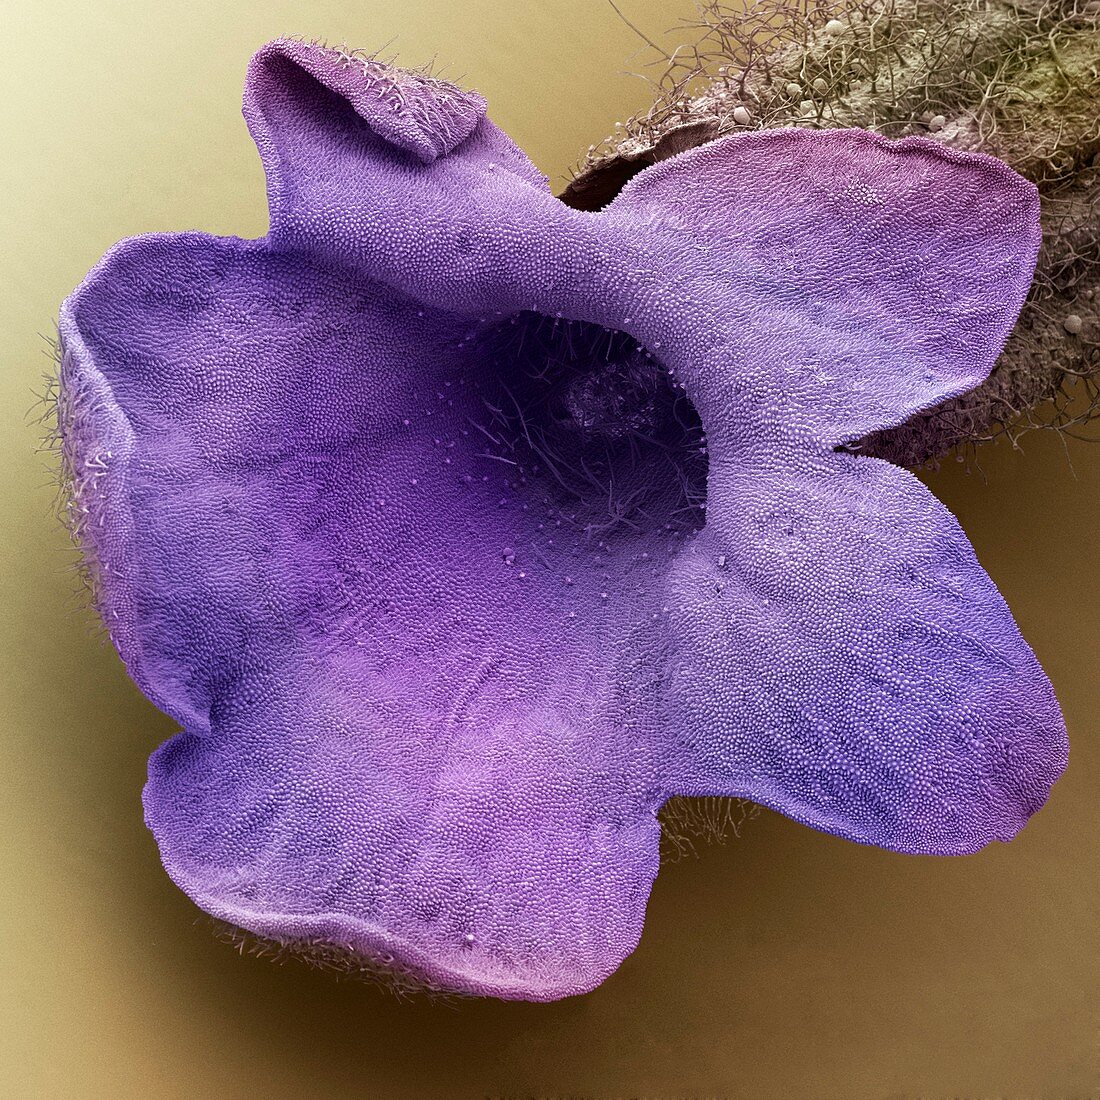 Lavender floret,SEM